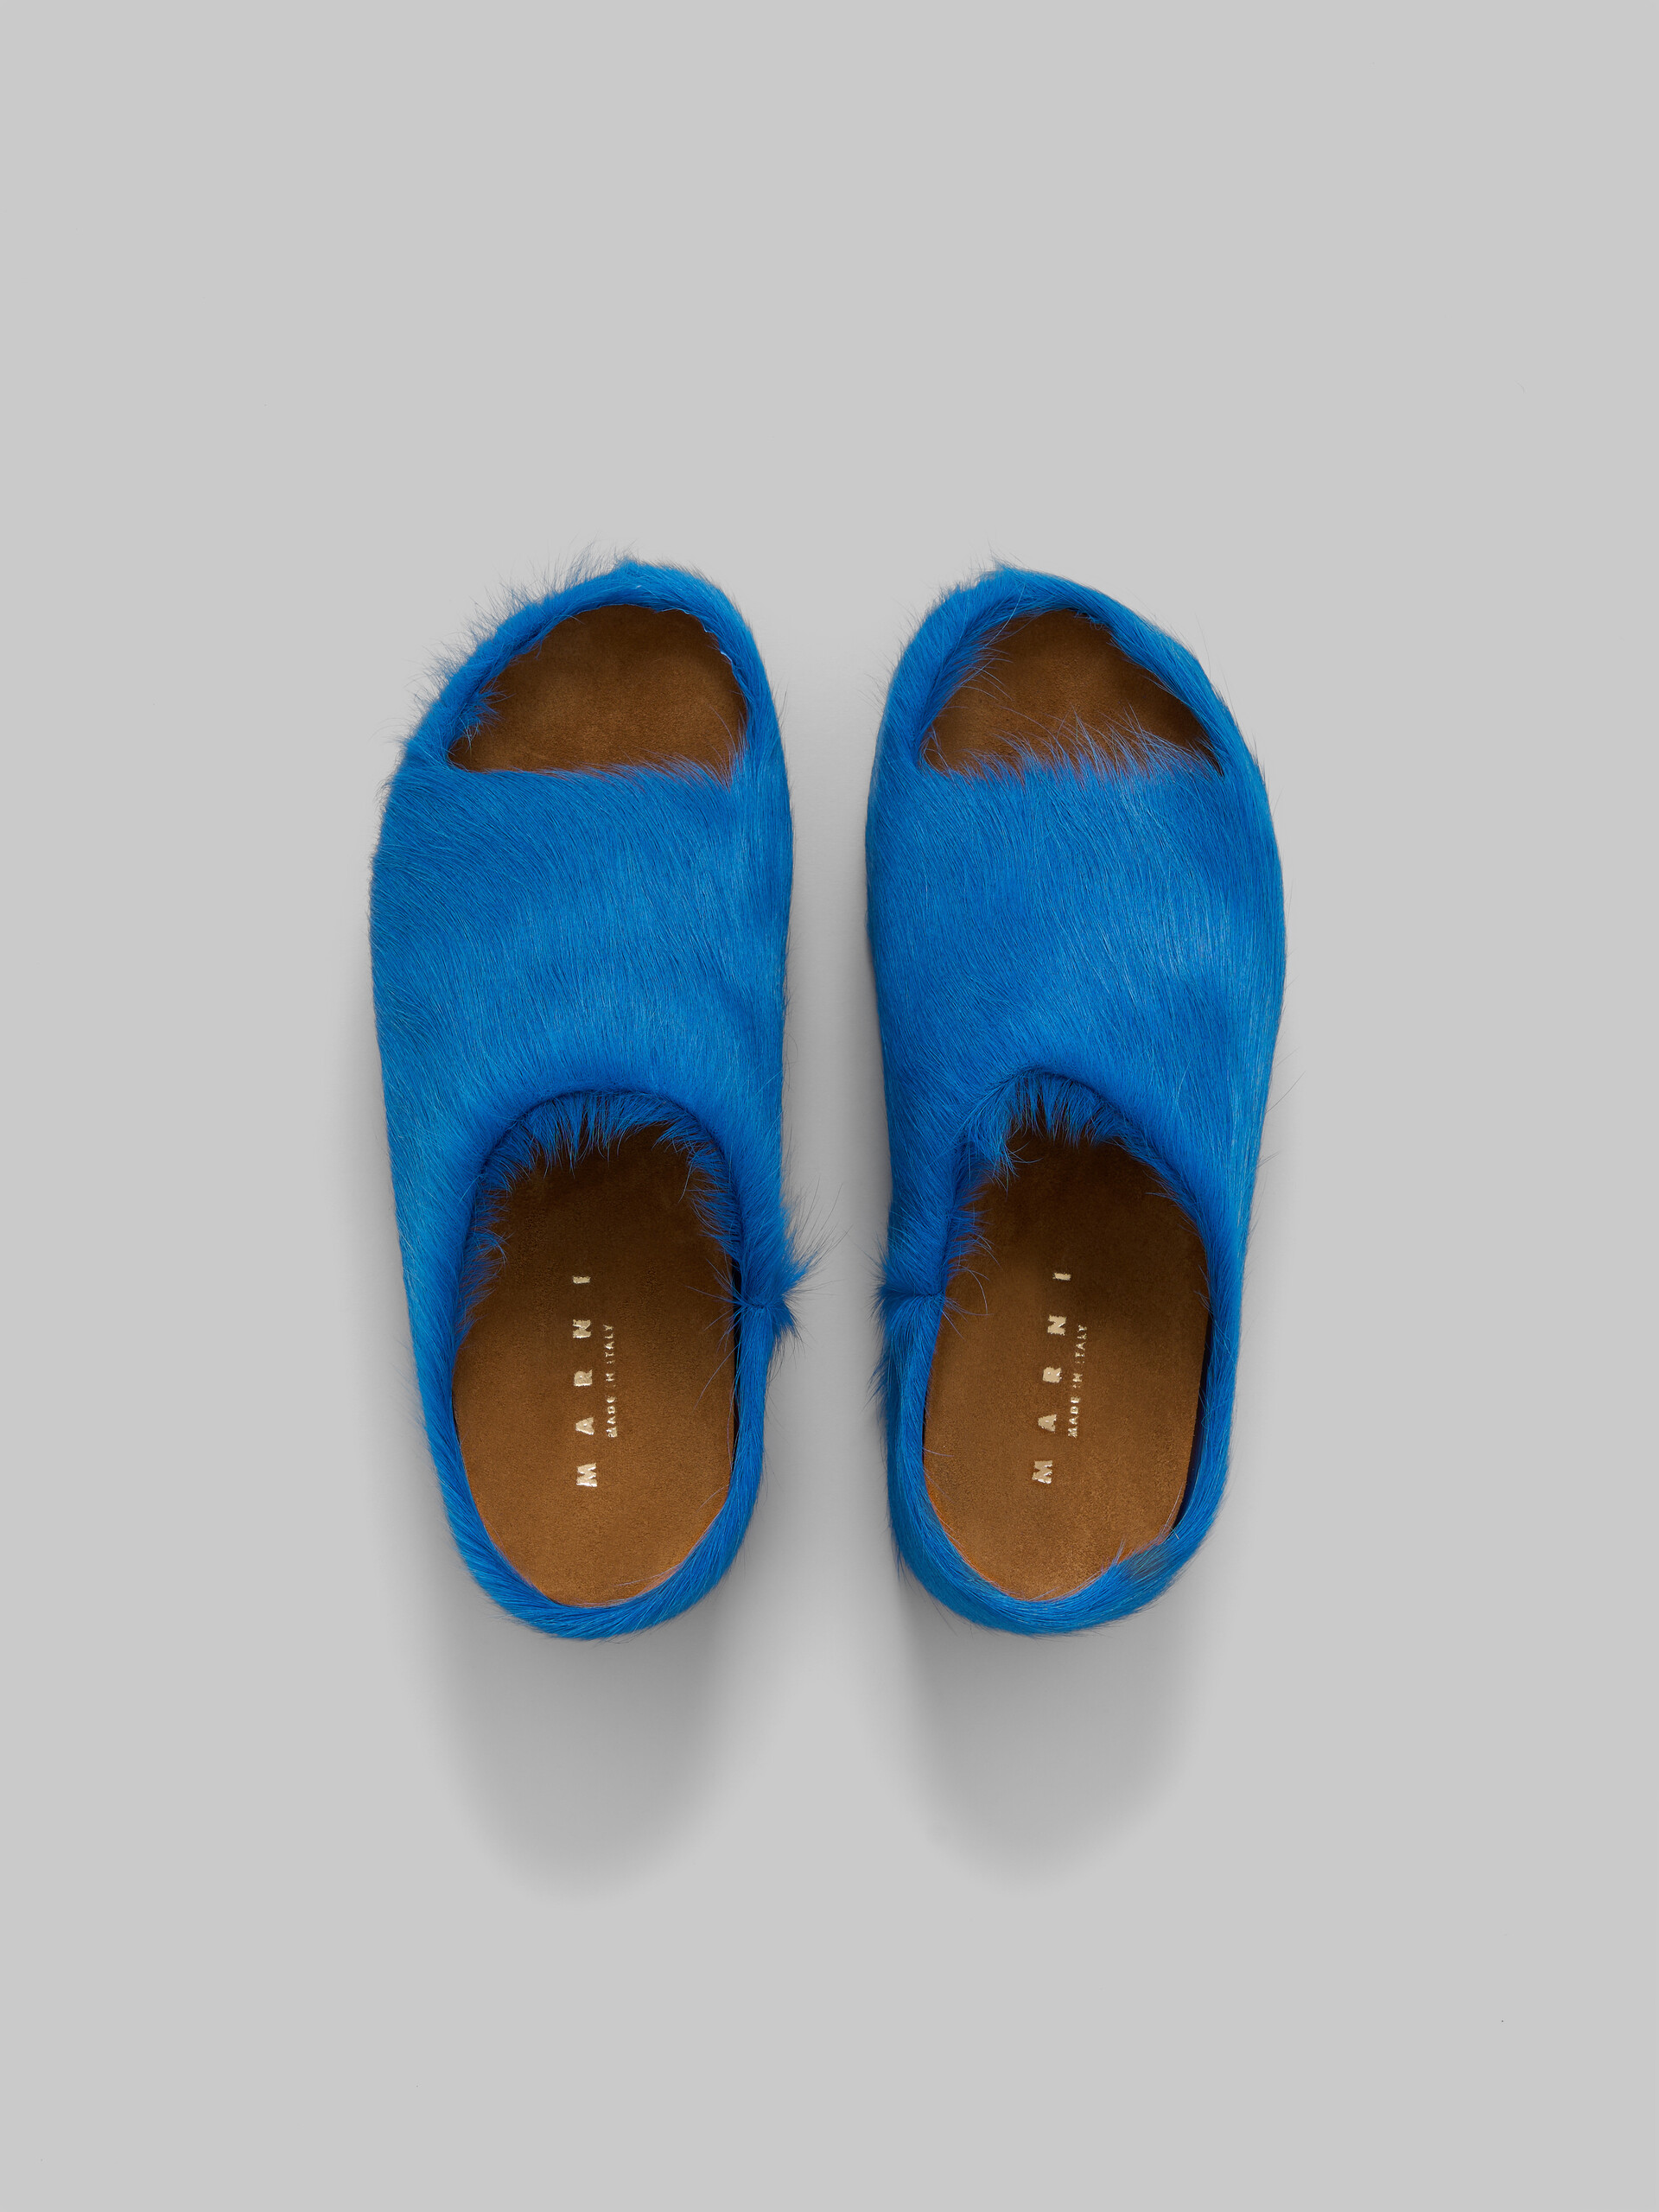 Slide con zoccolo chunky in pelle di vitello a pelo lungo blu - Sandali - Image 4